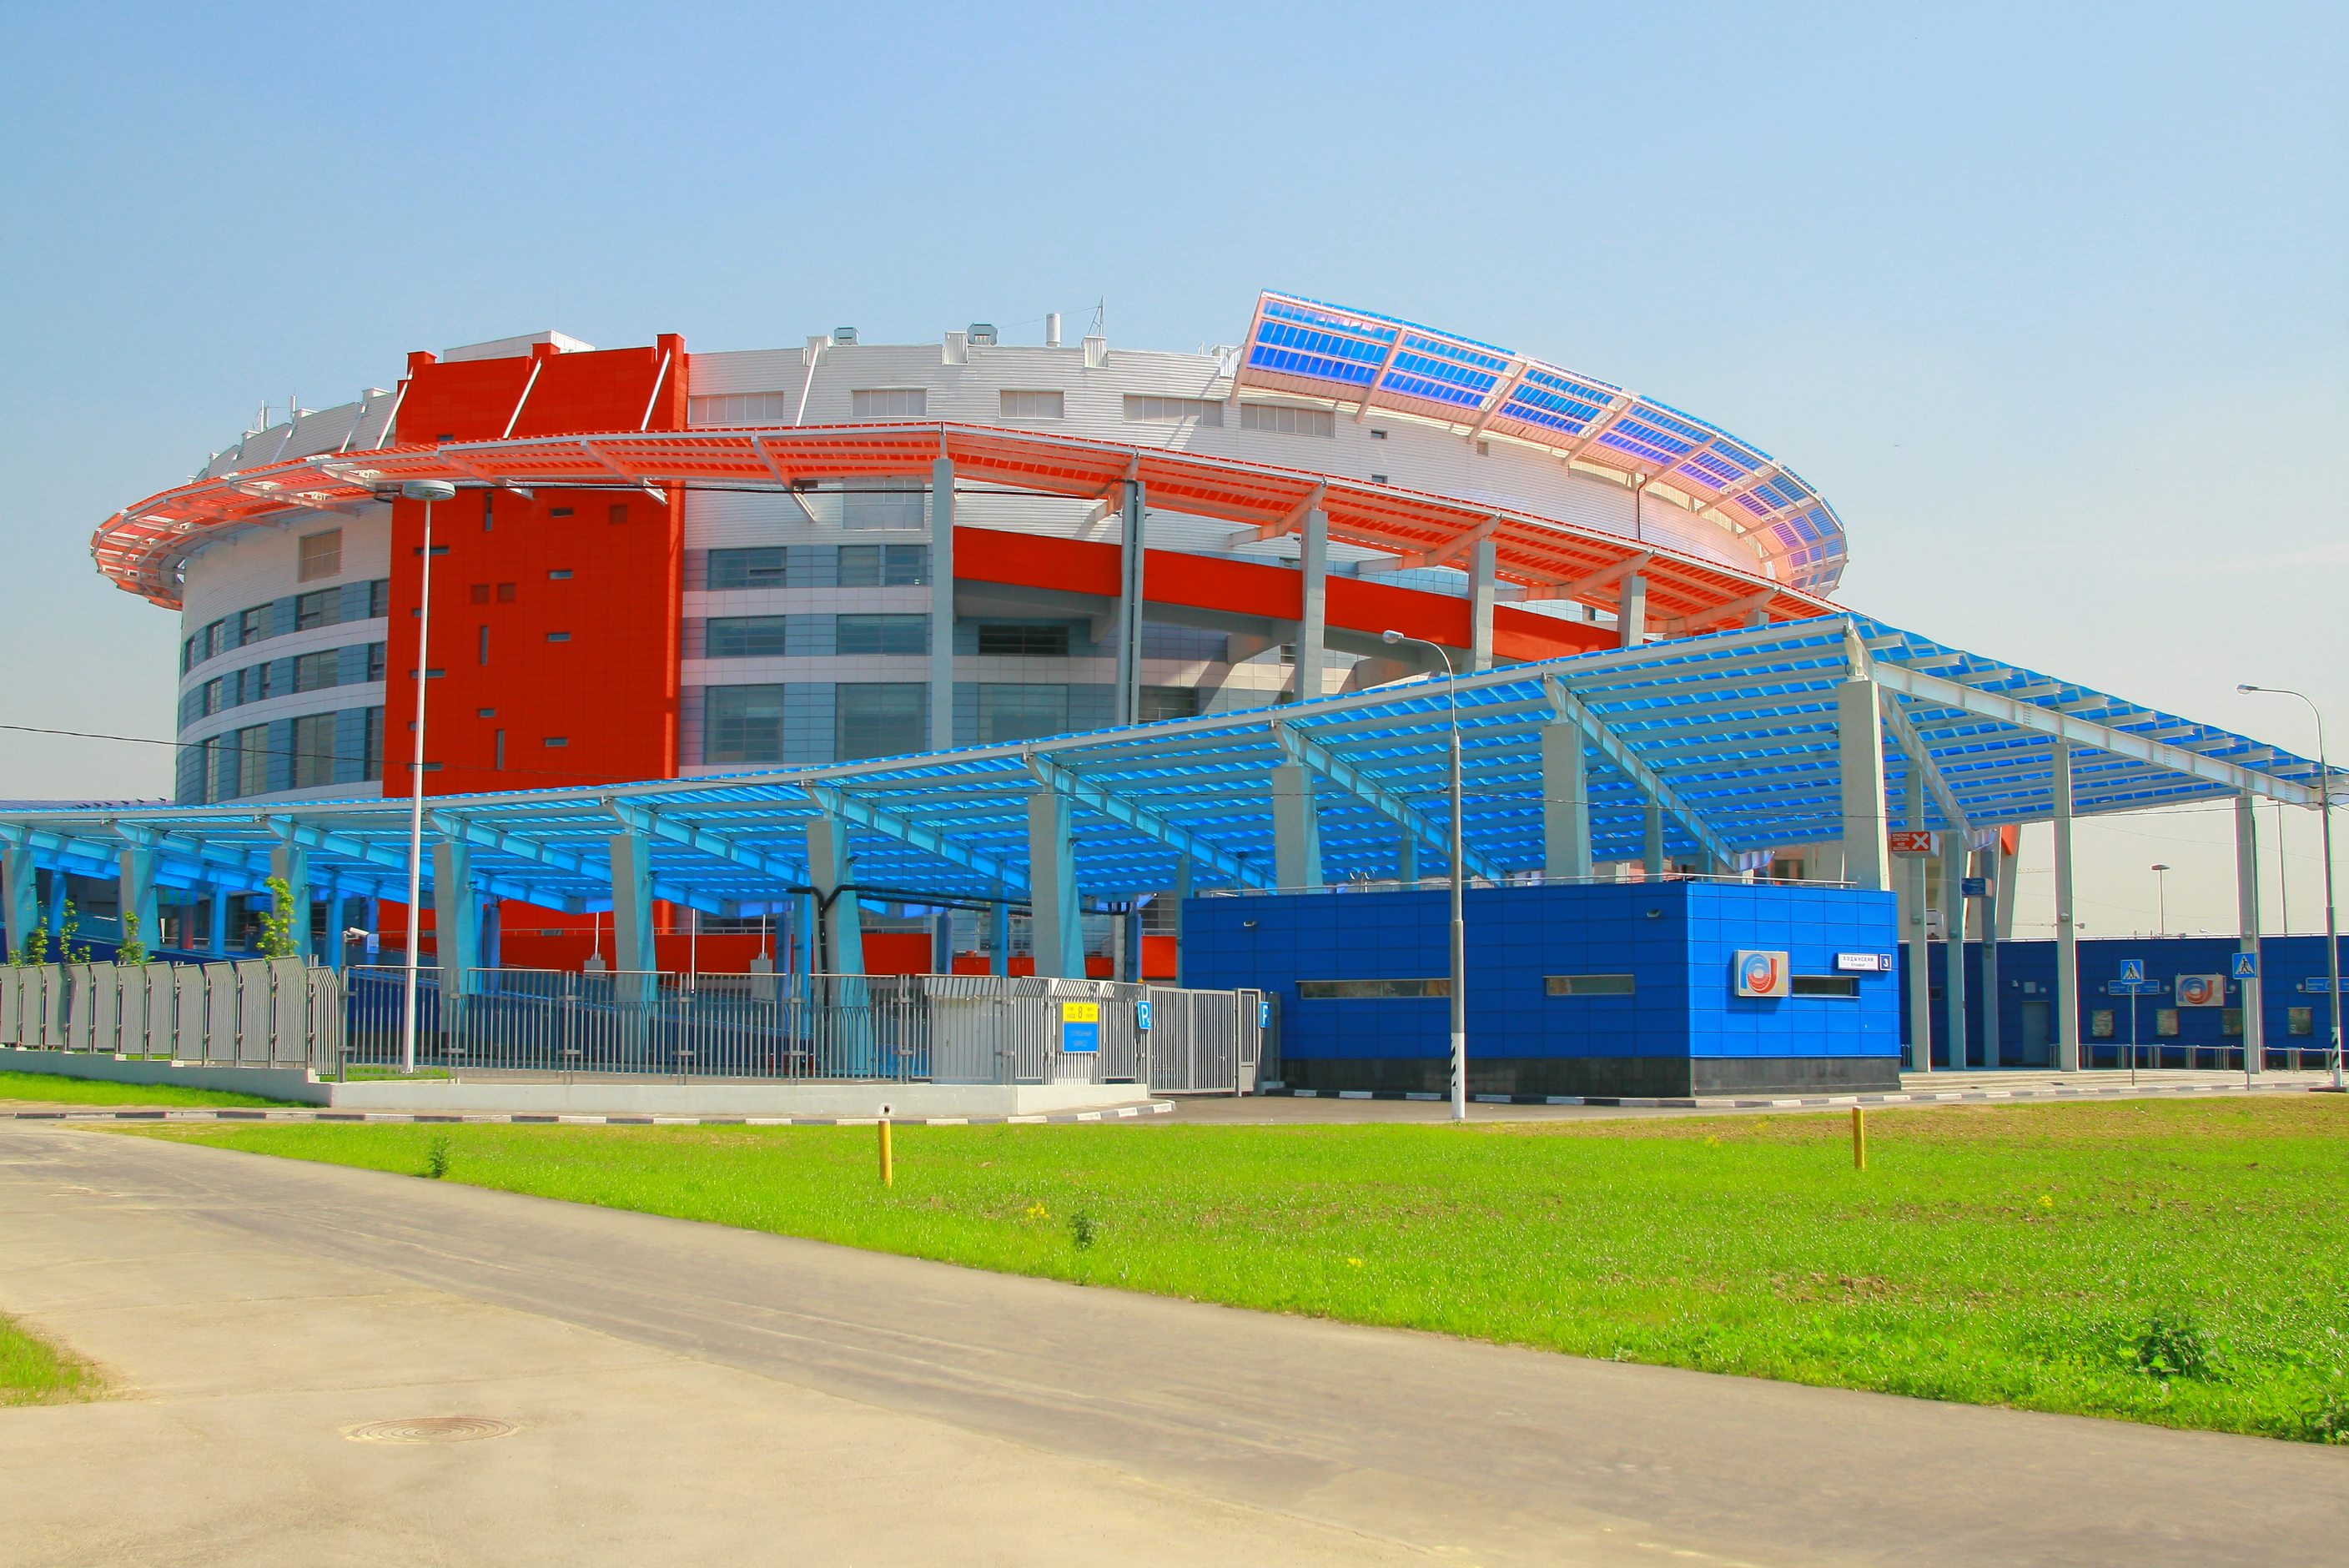 Стадион мегаспорт